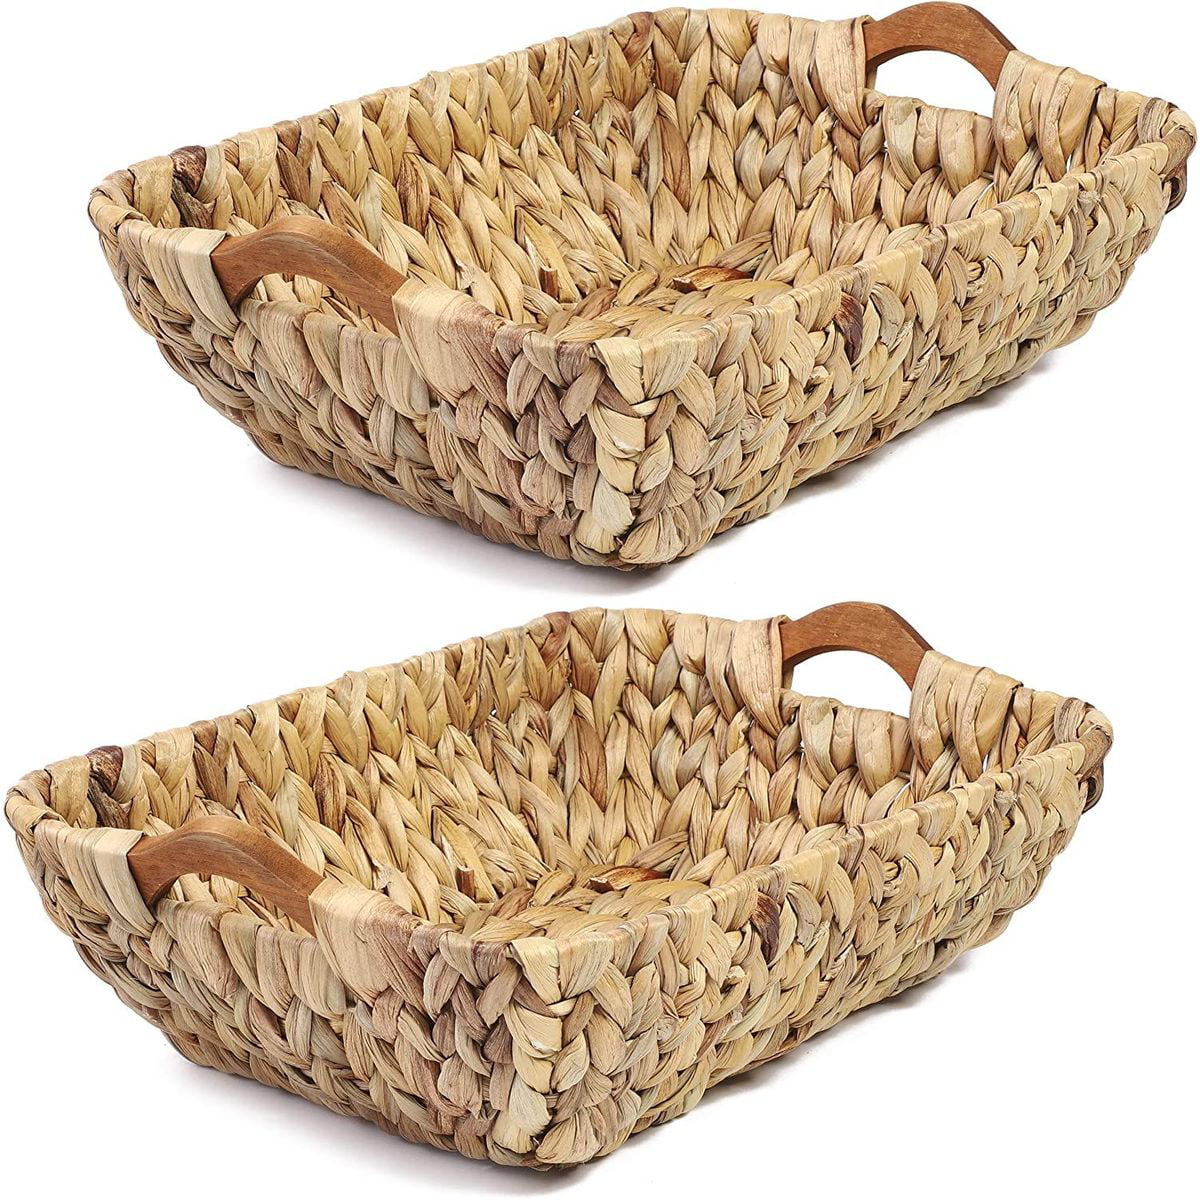 Seagrass Wicker Storage Basket Set of 2, 15'' x 10.6'' x 5.3 